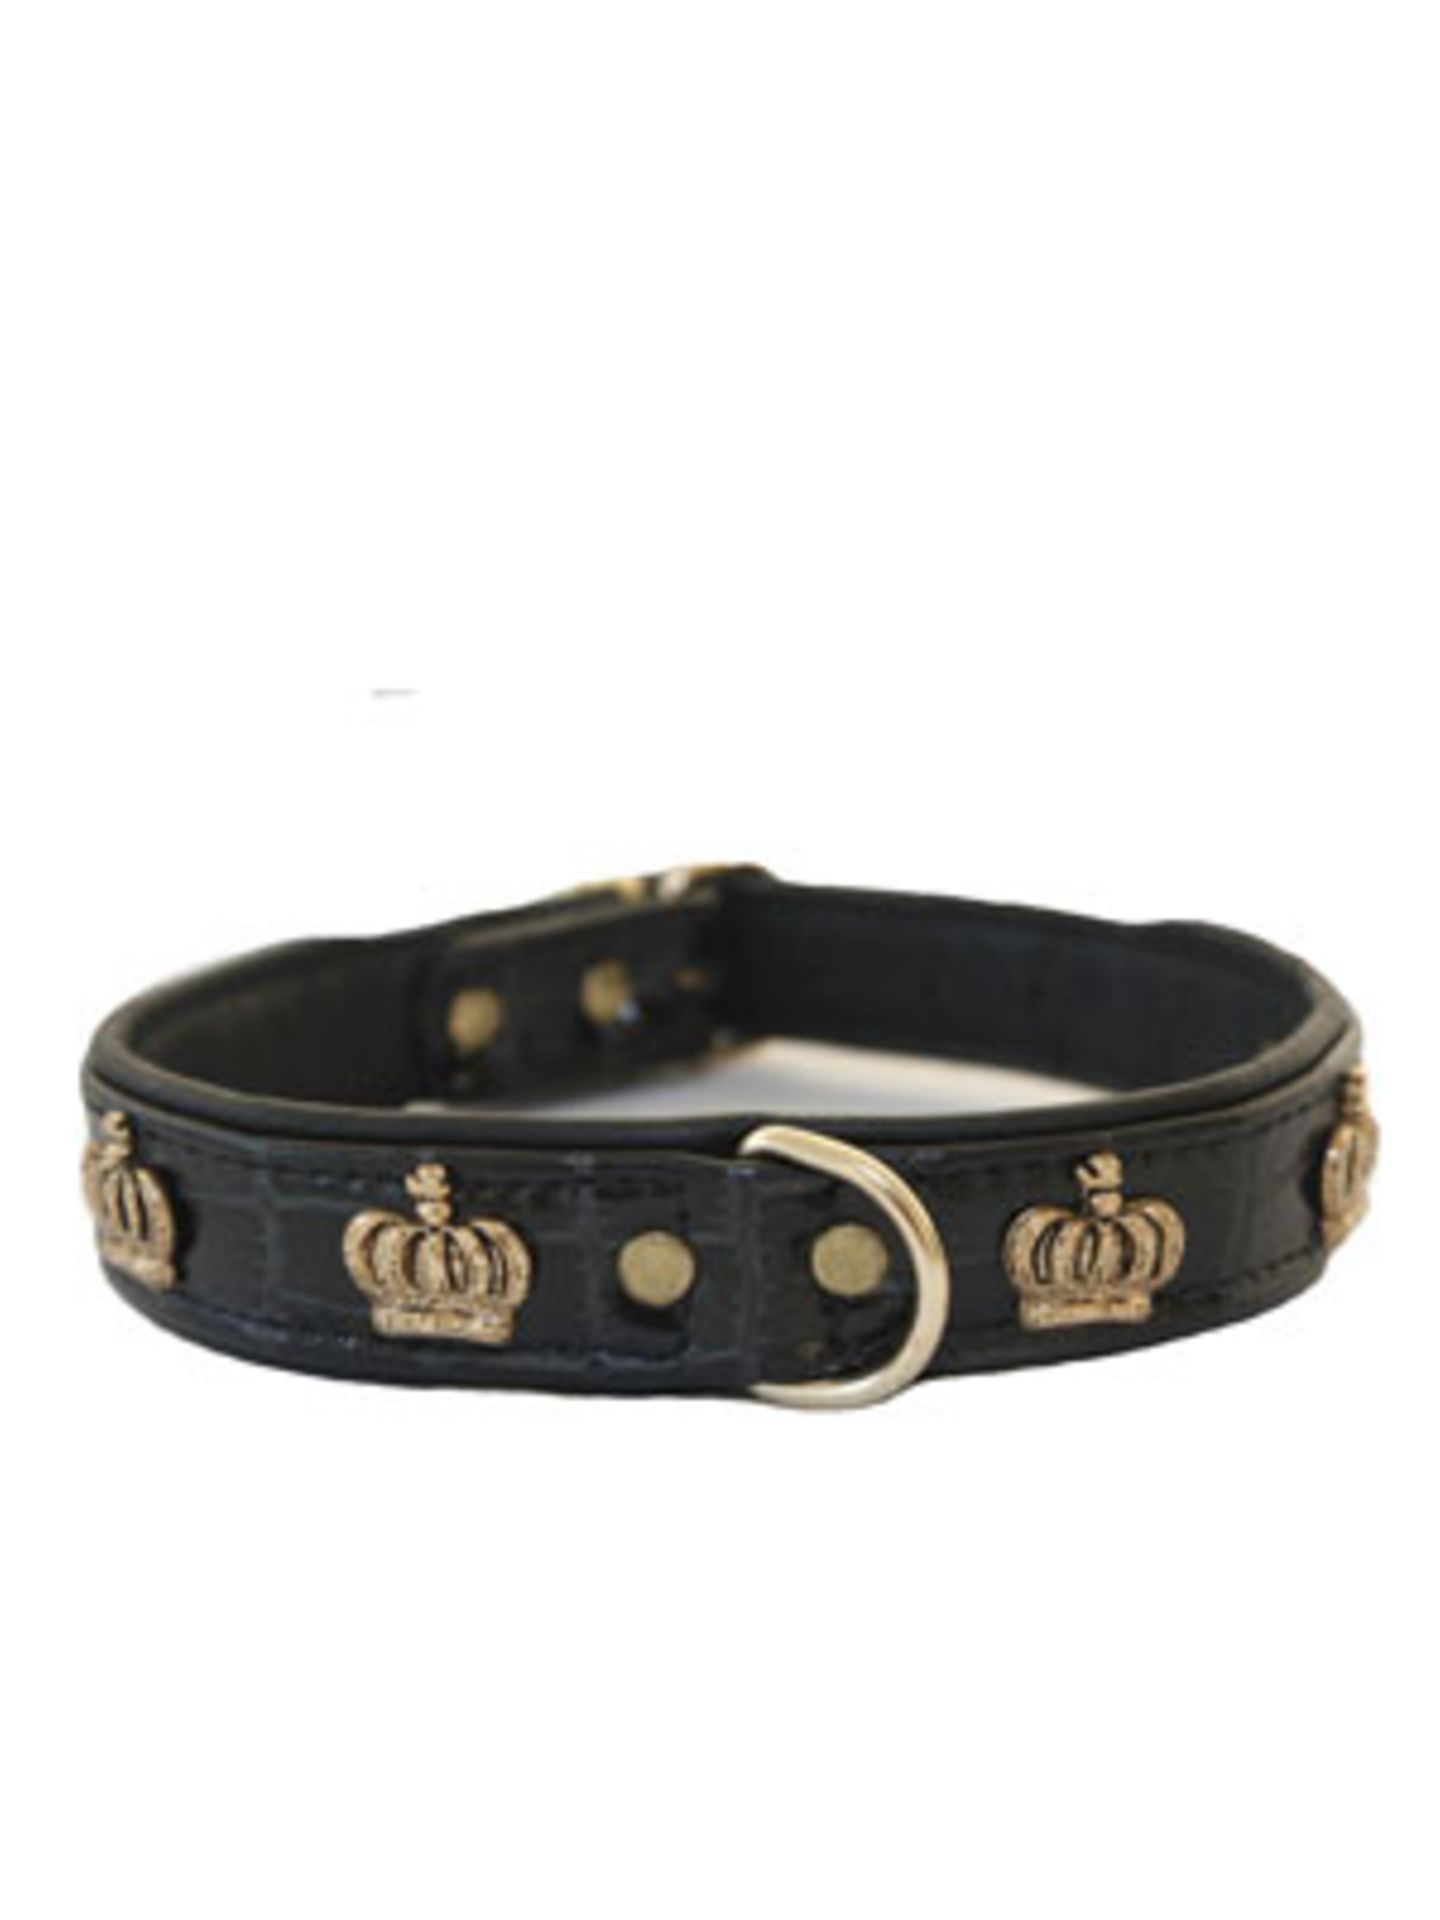 Royales Lederhalsband mit goldenen Krönchen von The Royal Dog an Cat, um 50 Euro. In verschiedenen Größen erhältlich.